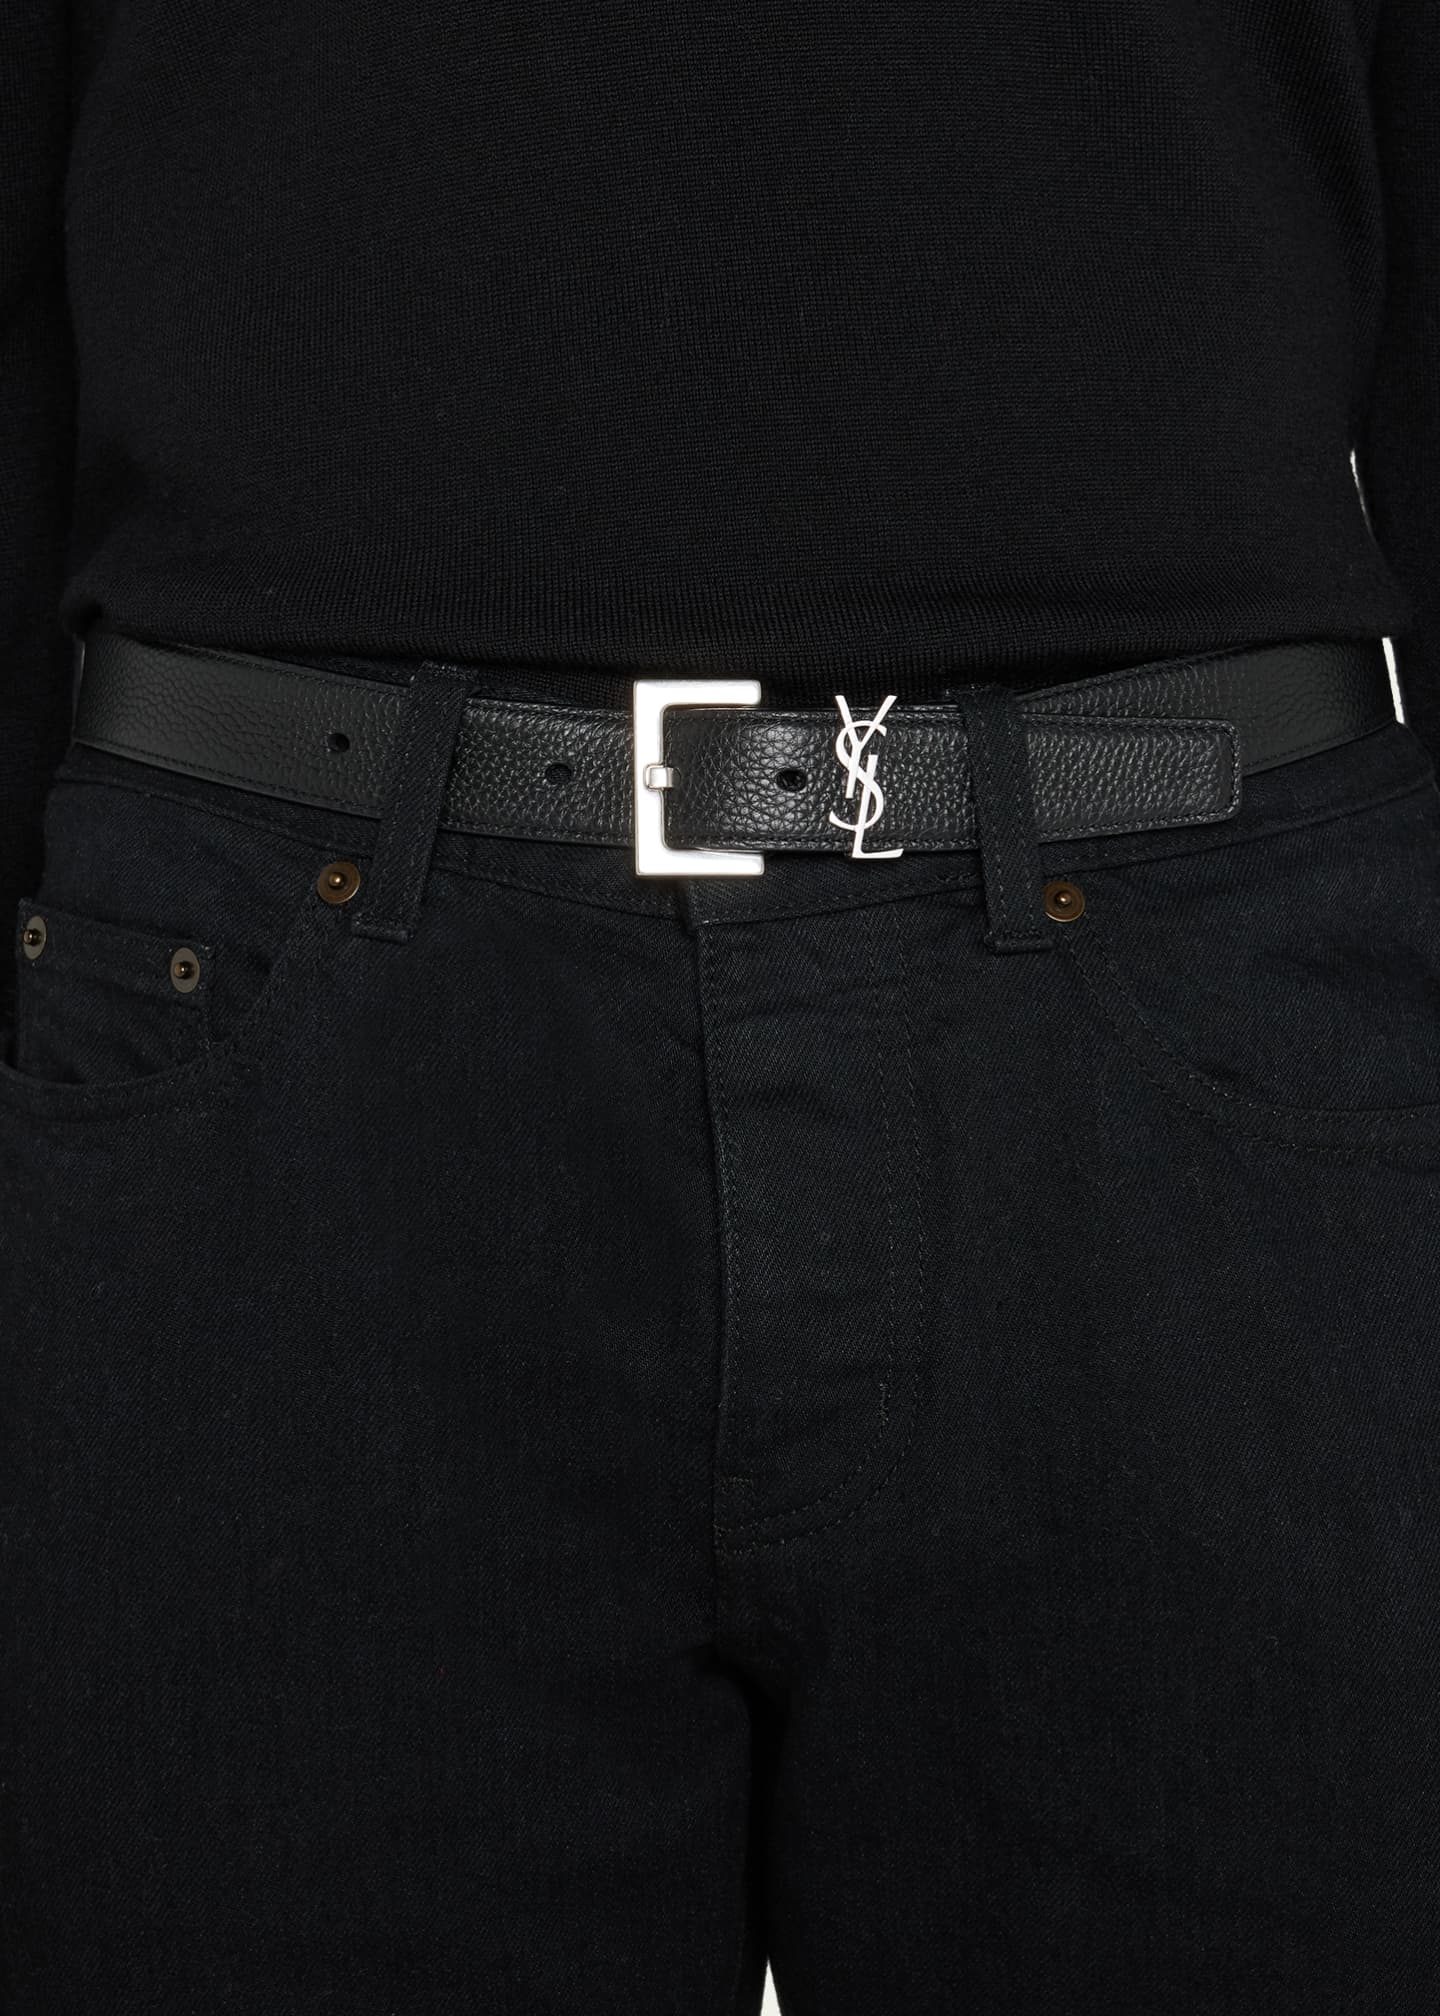 Men's Belts & Belt Bags Collection, Saint Laurent